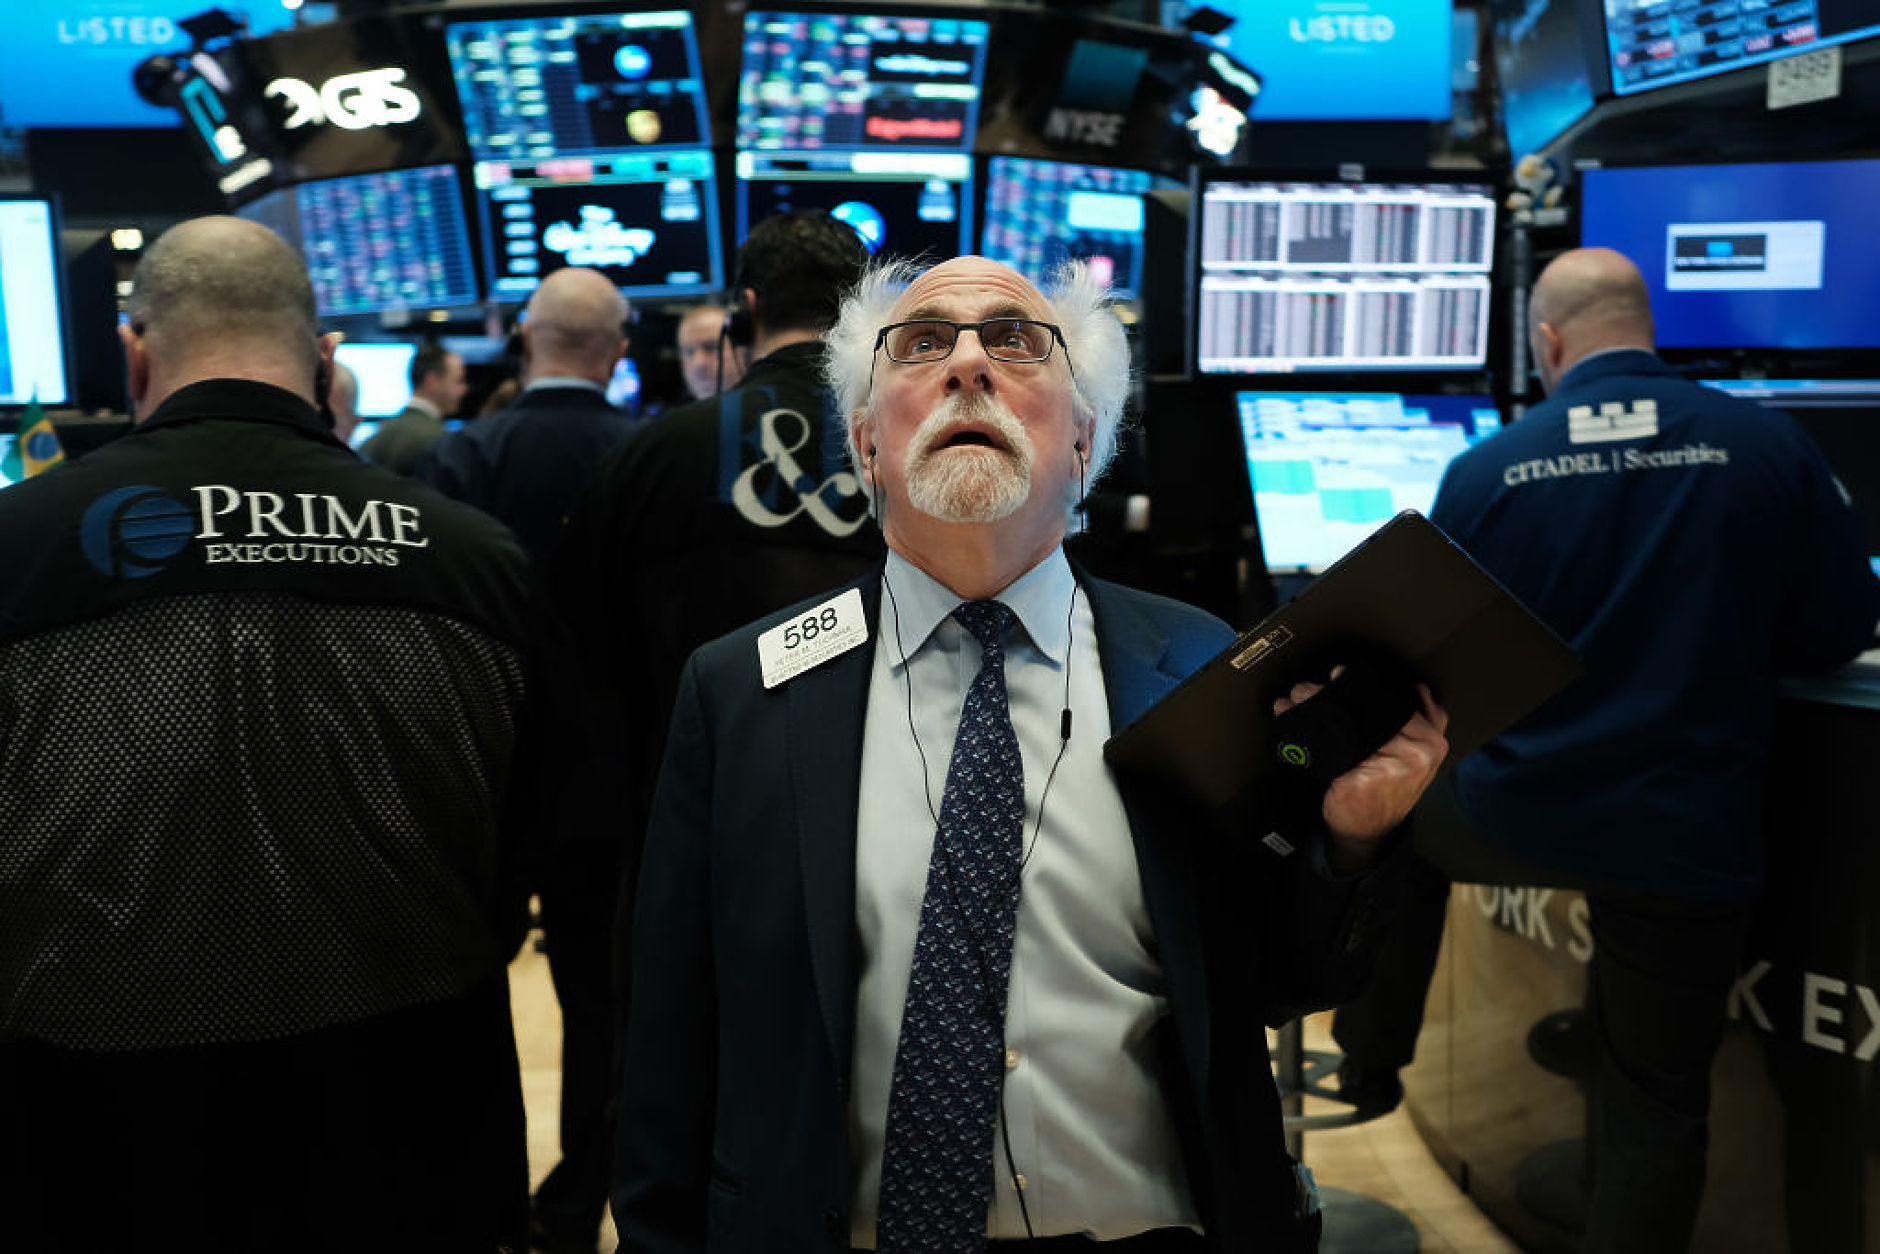 Рецесията идва и фондовите пазари няма да останат невредими, твърди експерт